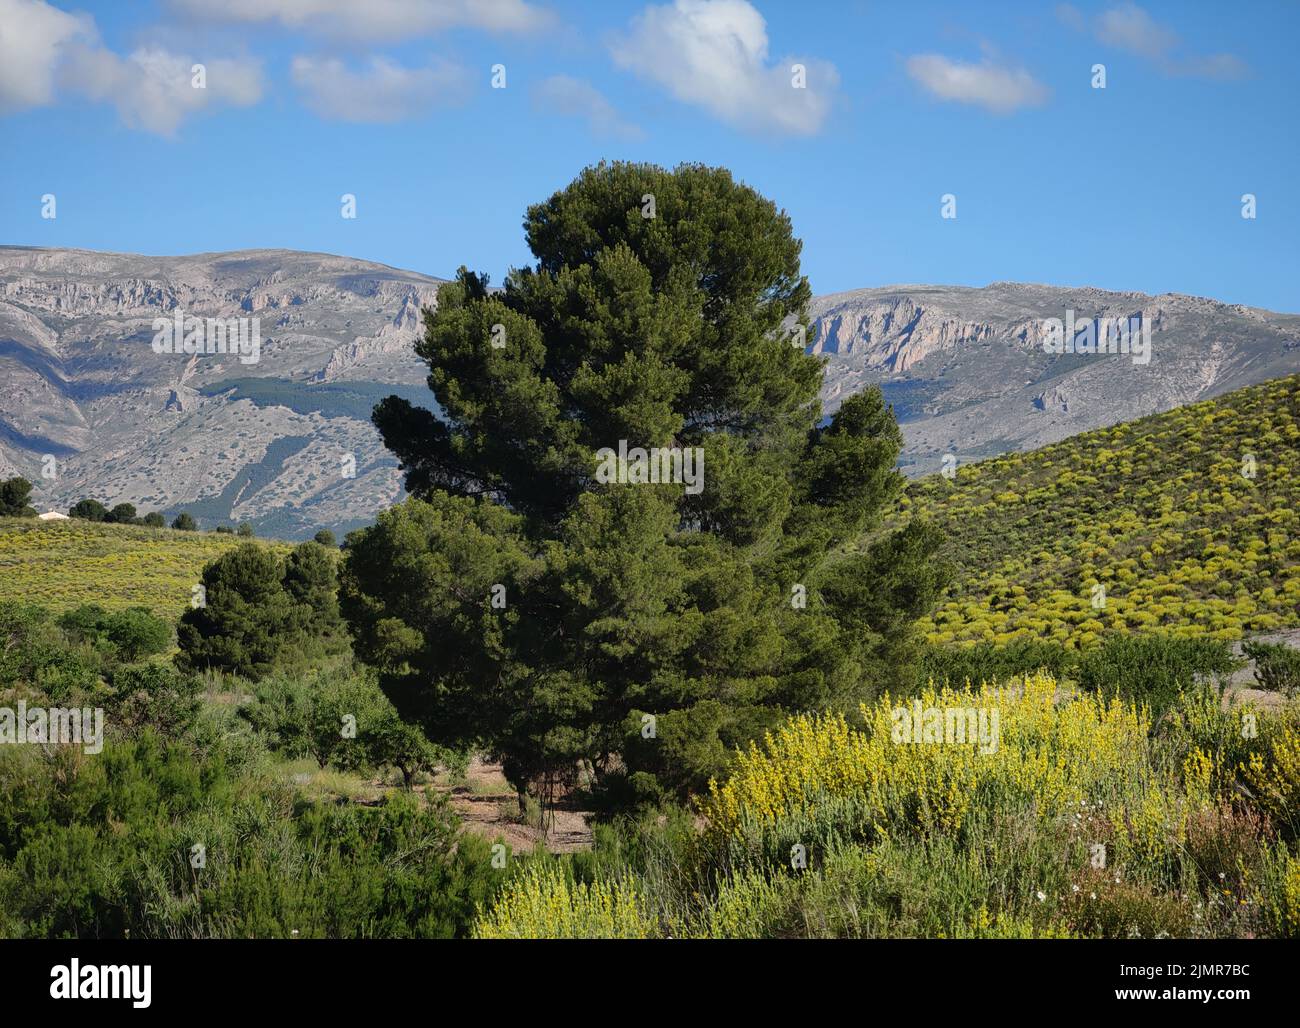 vista panoramica suggestiva e tranquilla sulle montagne del sud della spagna, con un bellissimo pino di grandi dimensioni Foto Stock